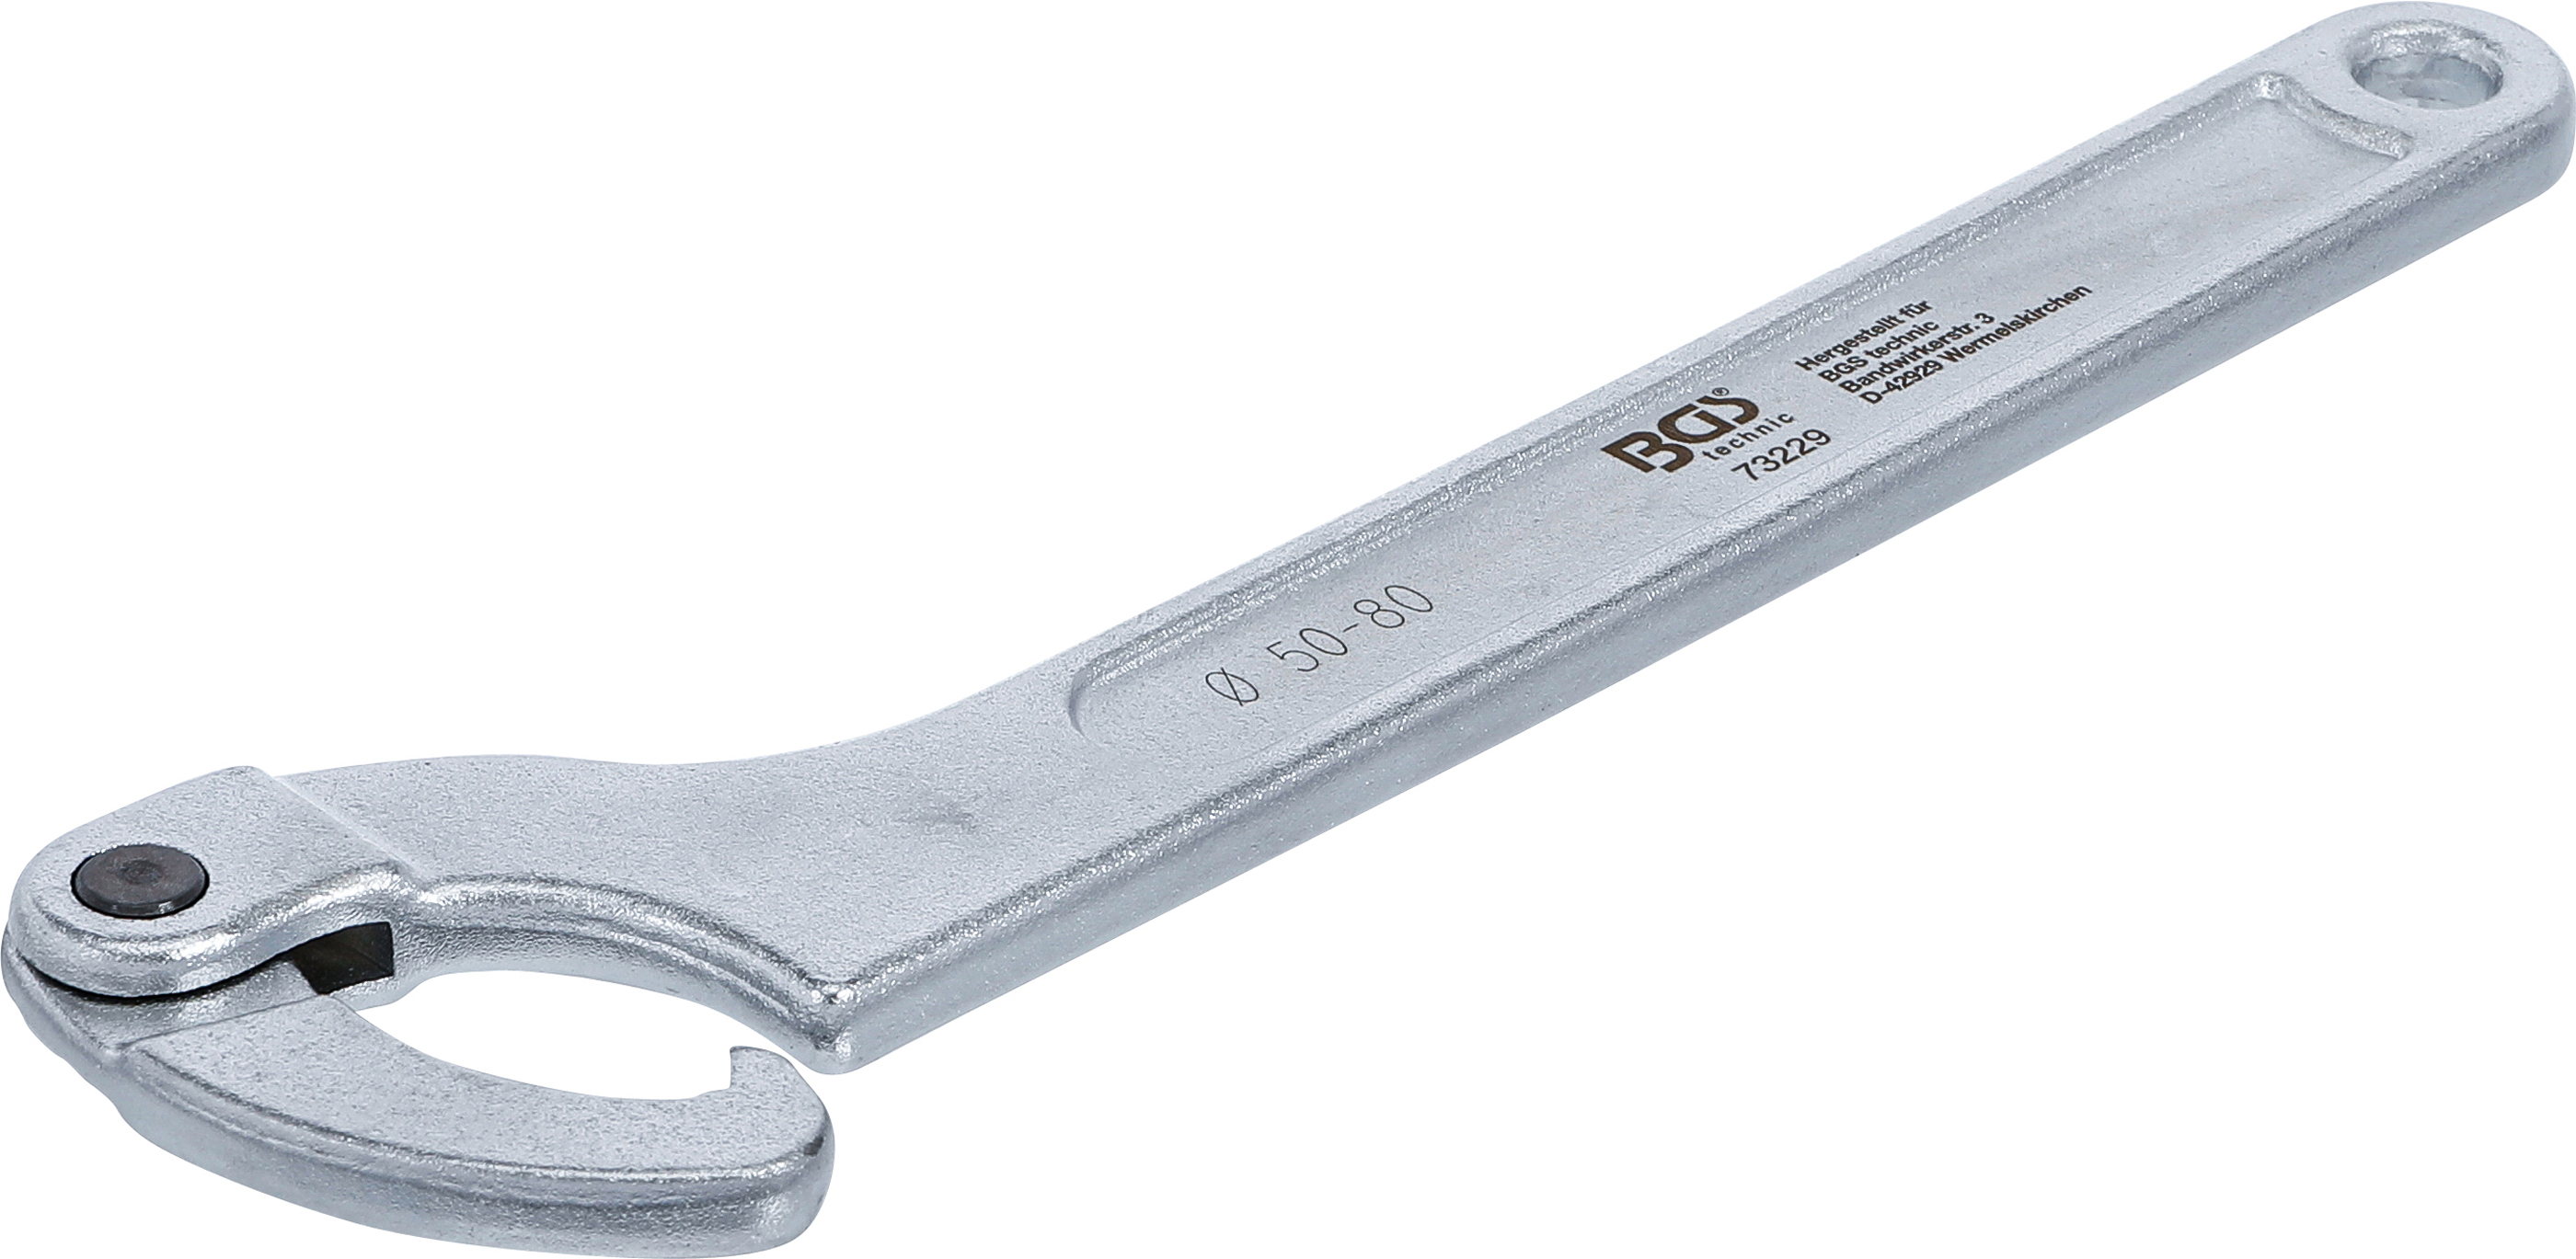 BGS Gelenk-Hakenschlüssel mit Nase | 50 - 80 mm